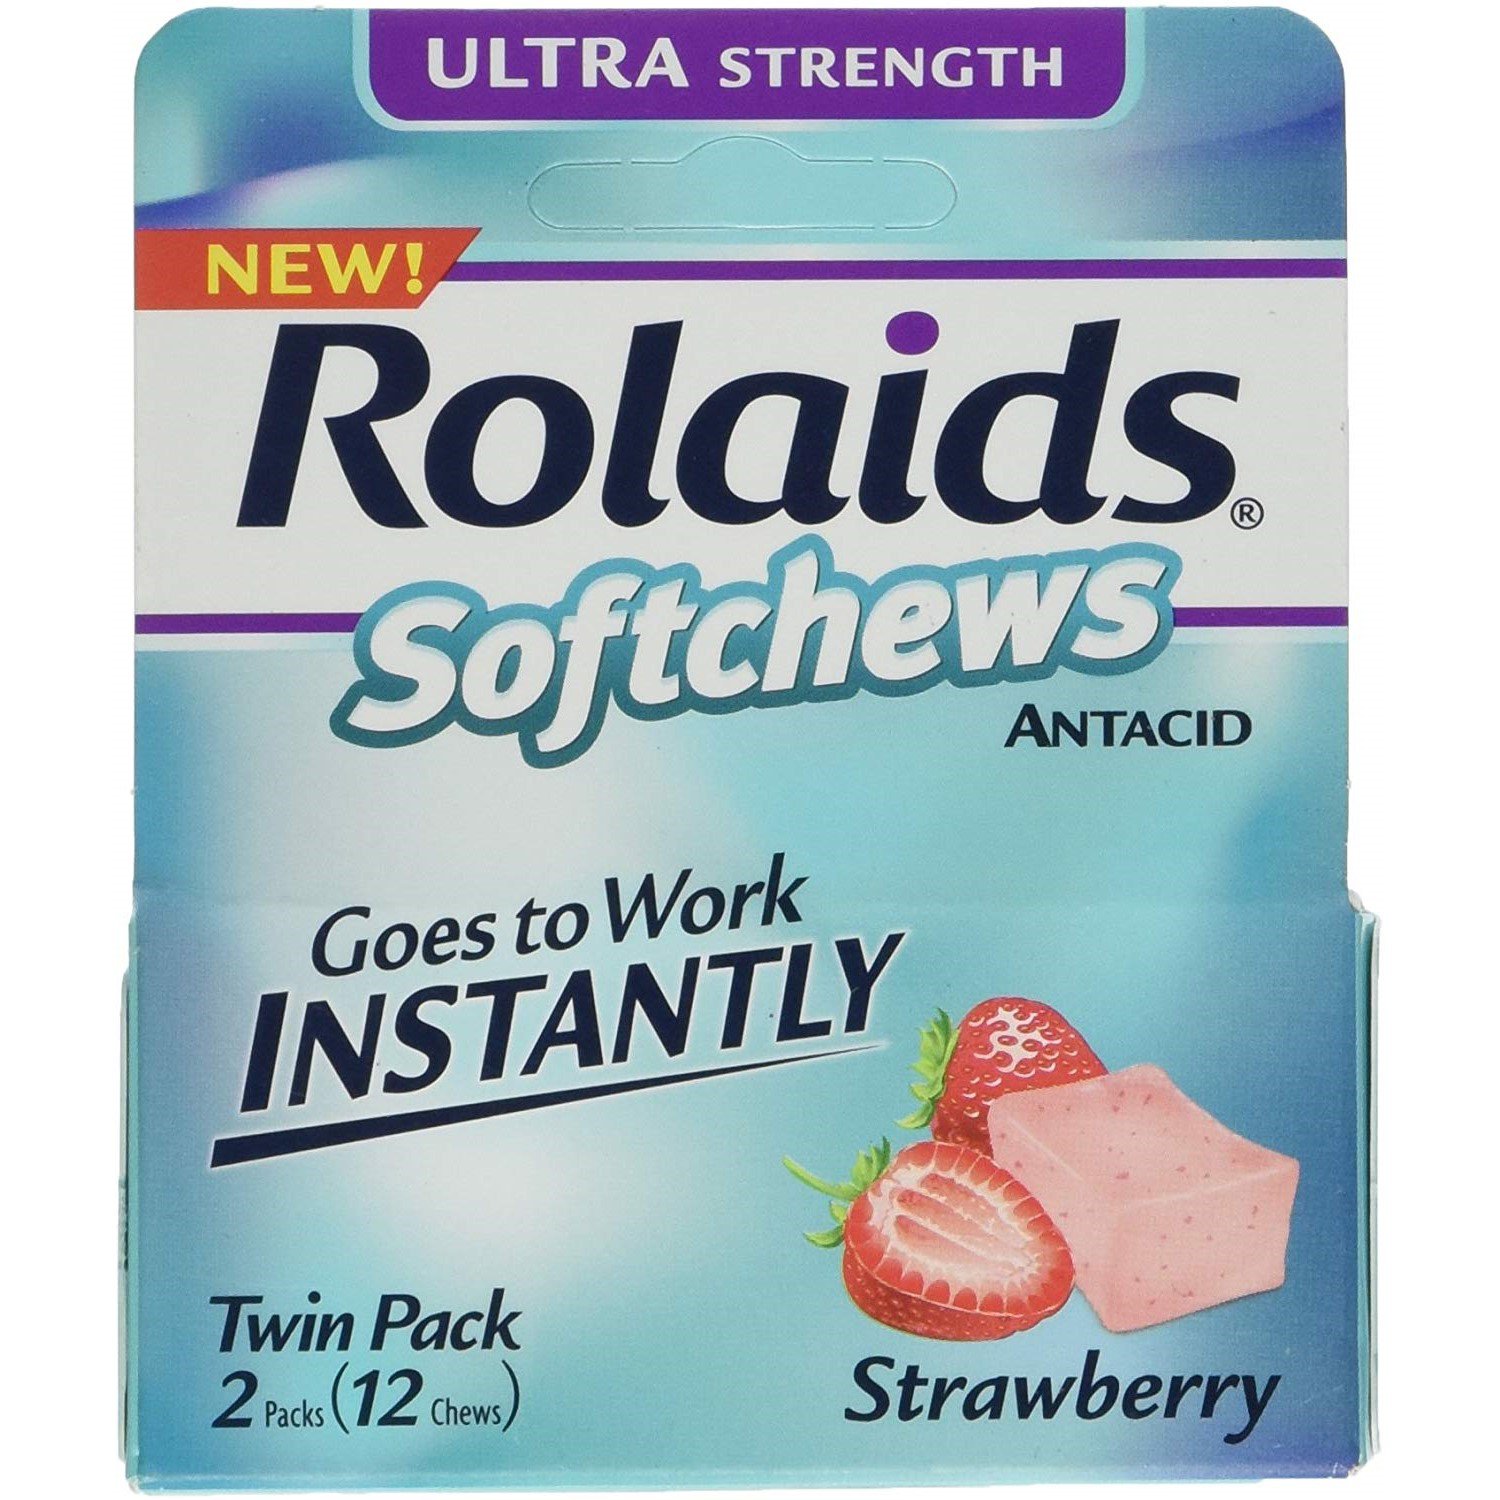 Rolaids таблетки. Antacid Soft Chews. Strawberry flavor. Витамины от тошноты американские. Antacid